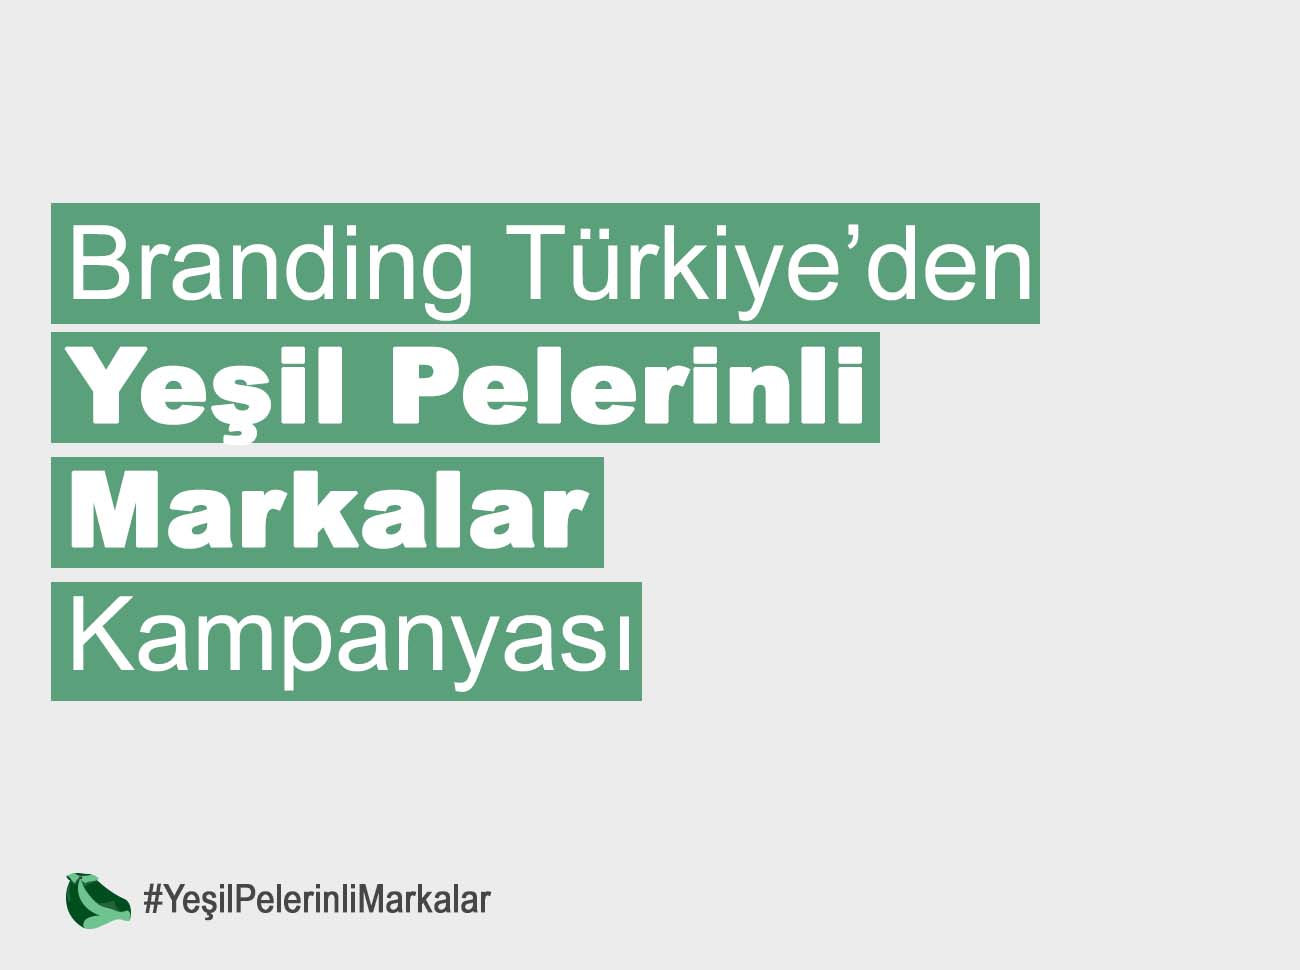 Branding Türkiye den Yeşil Pelerinli Markalar